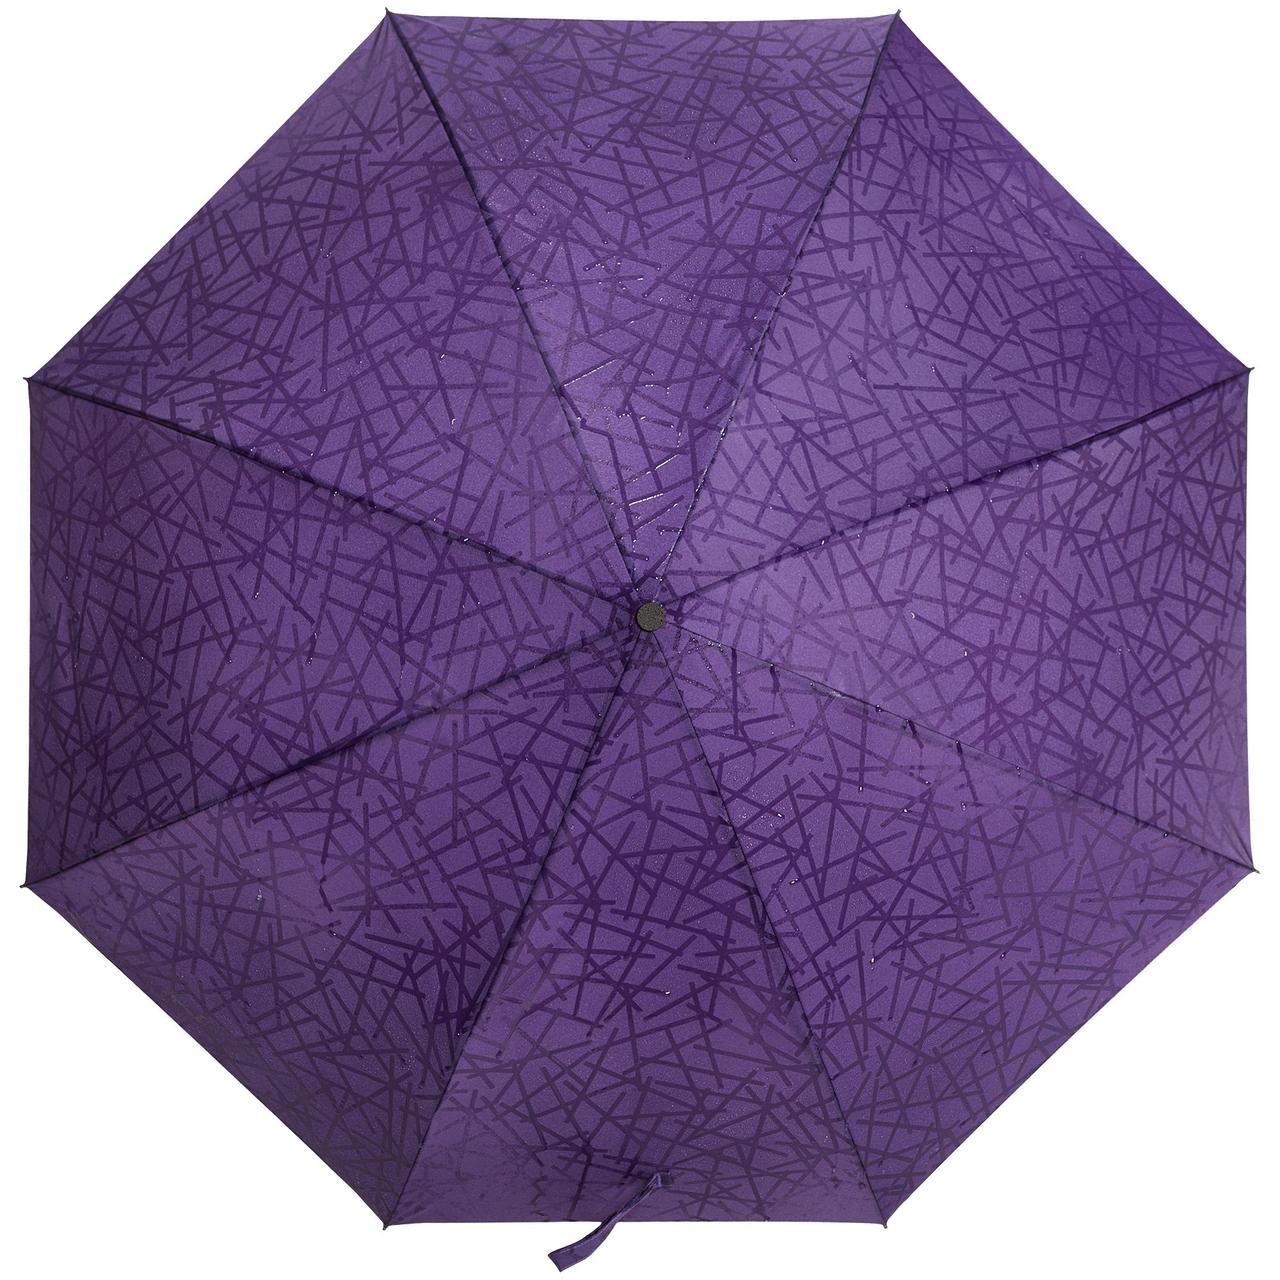 Складной зонт Magic с проявляющимся рисунком, фиолетовый (артикул 5660.77)